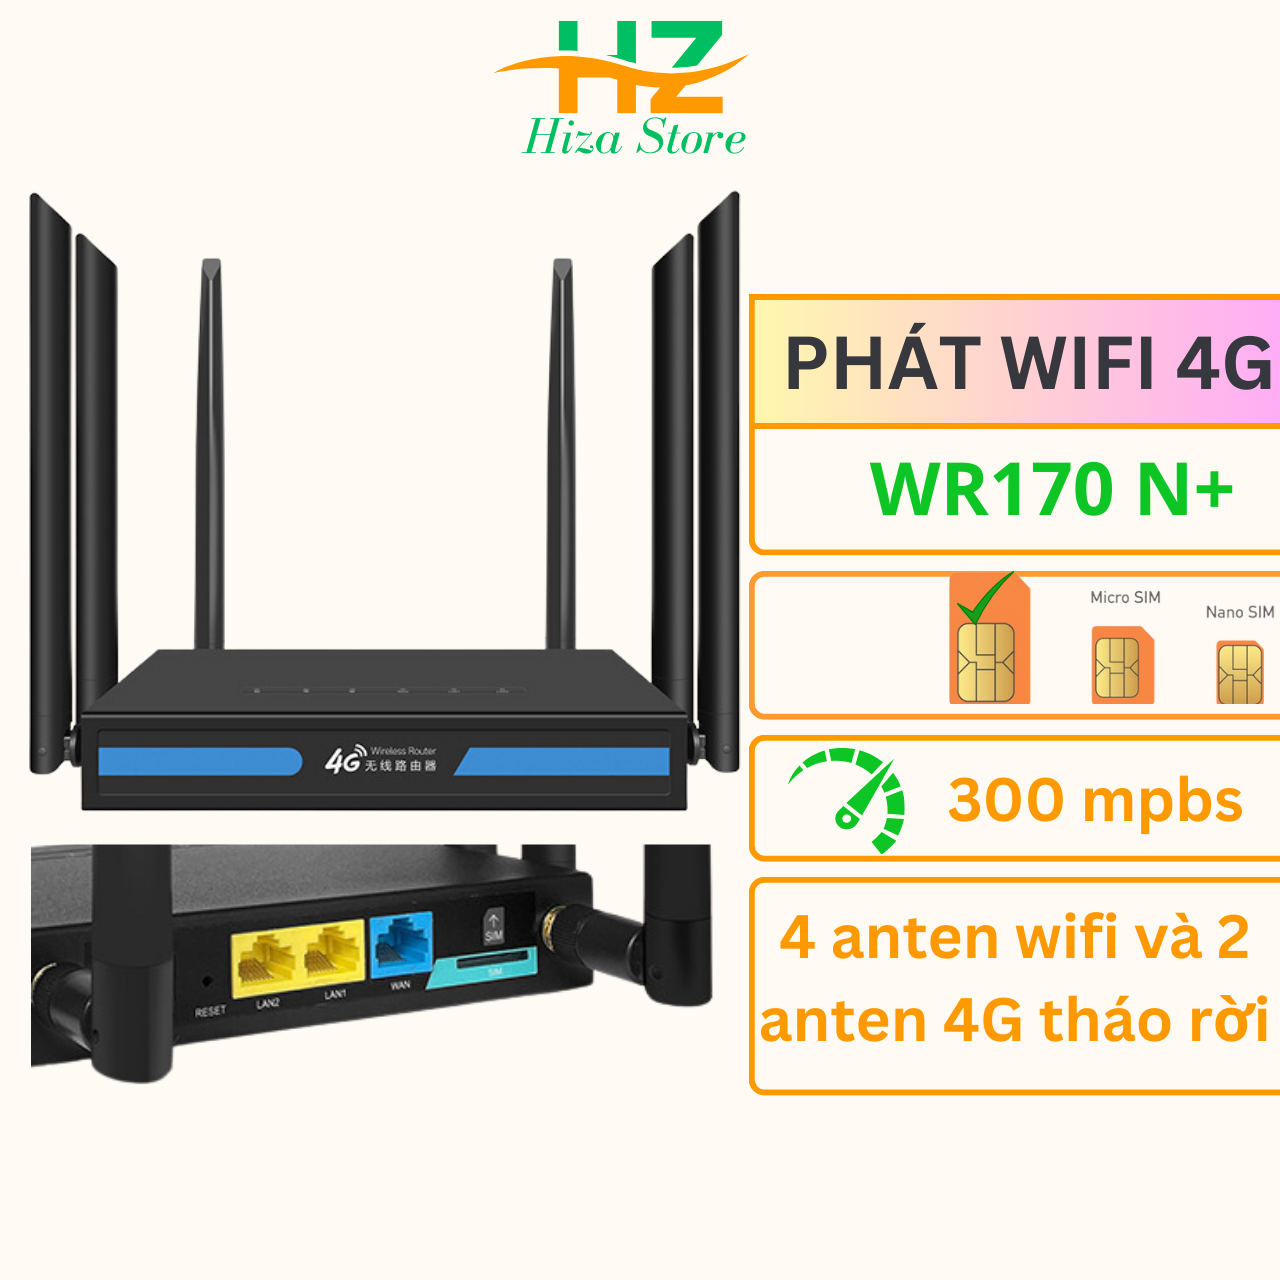 Phát wifi từ sim 4G WR170 N+ với 4 anten phát wifi và 2 anten thu sóng 4g chuẩn sma tháo rời được